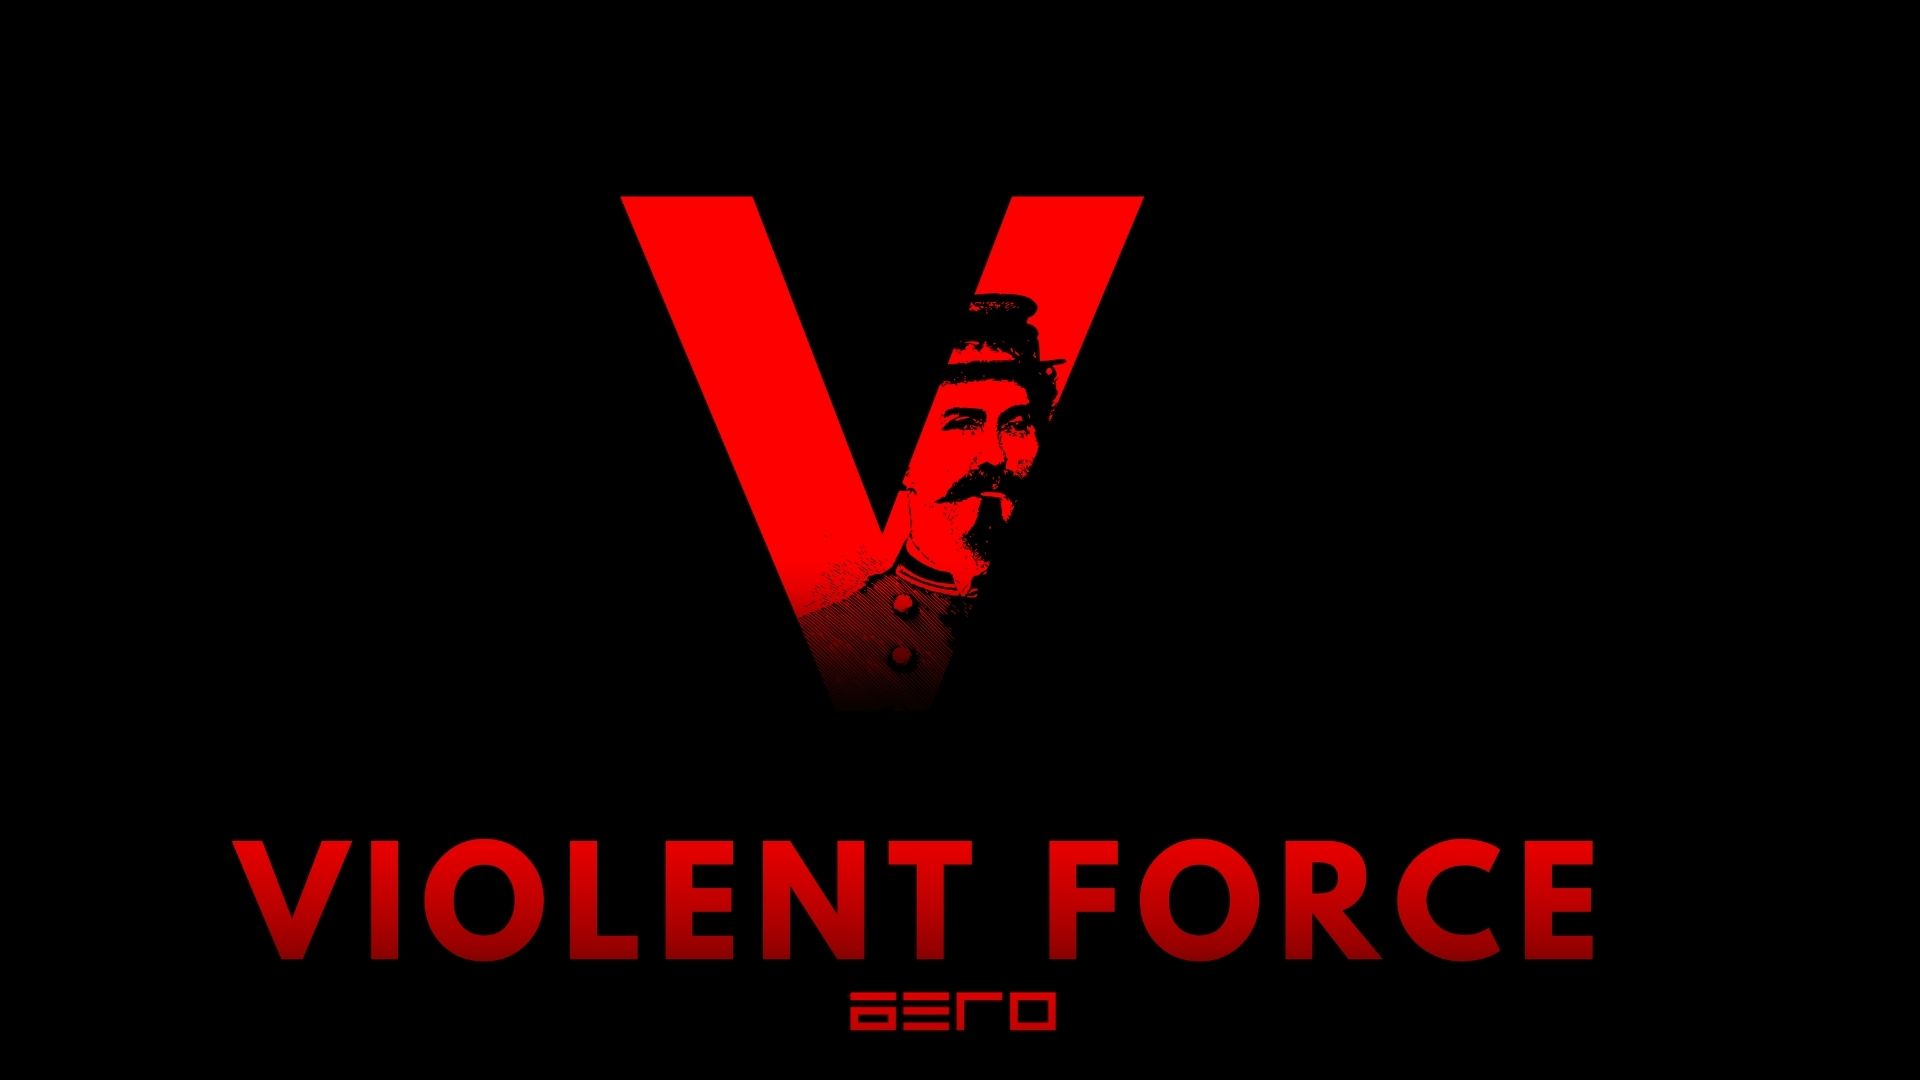 VIOLENT FORCE